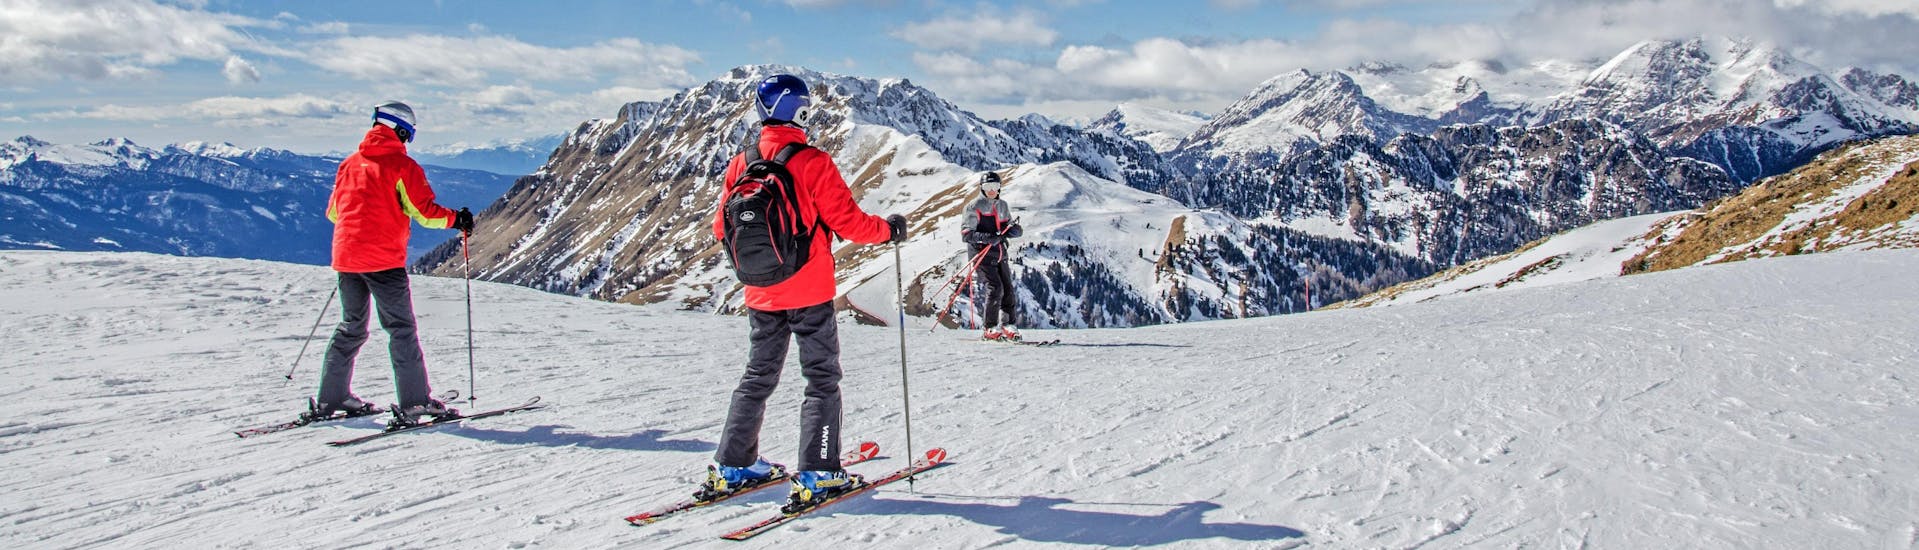 Esquiadores en la cima de las montañas con vistas a la estación de esquí.